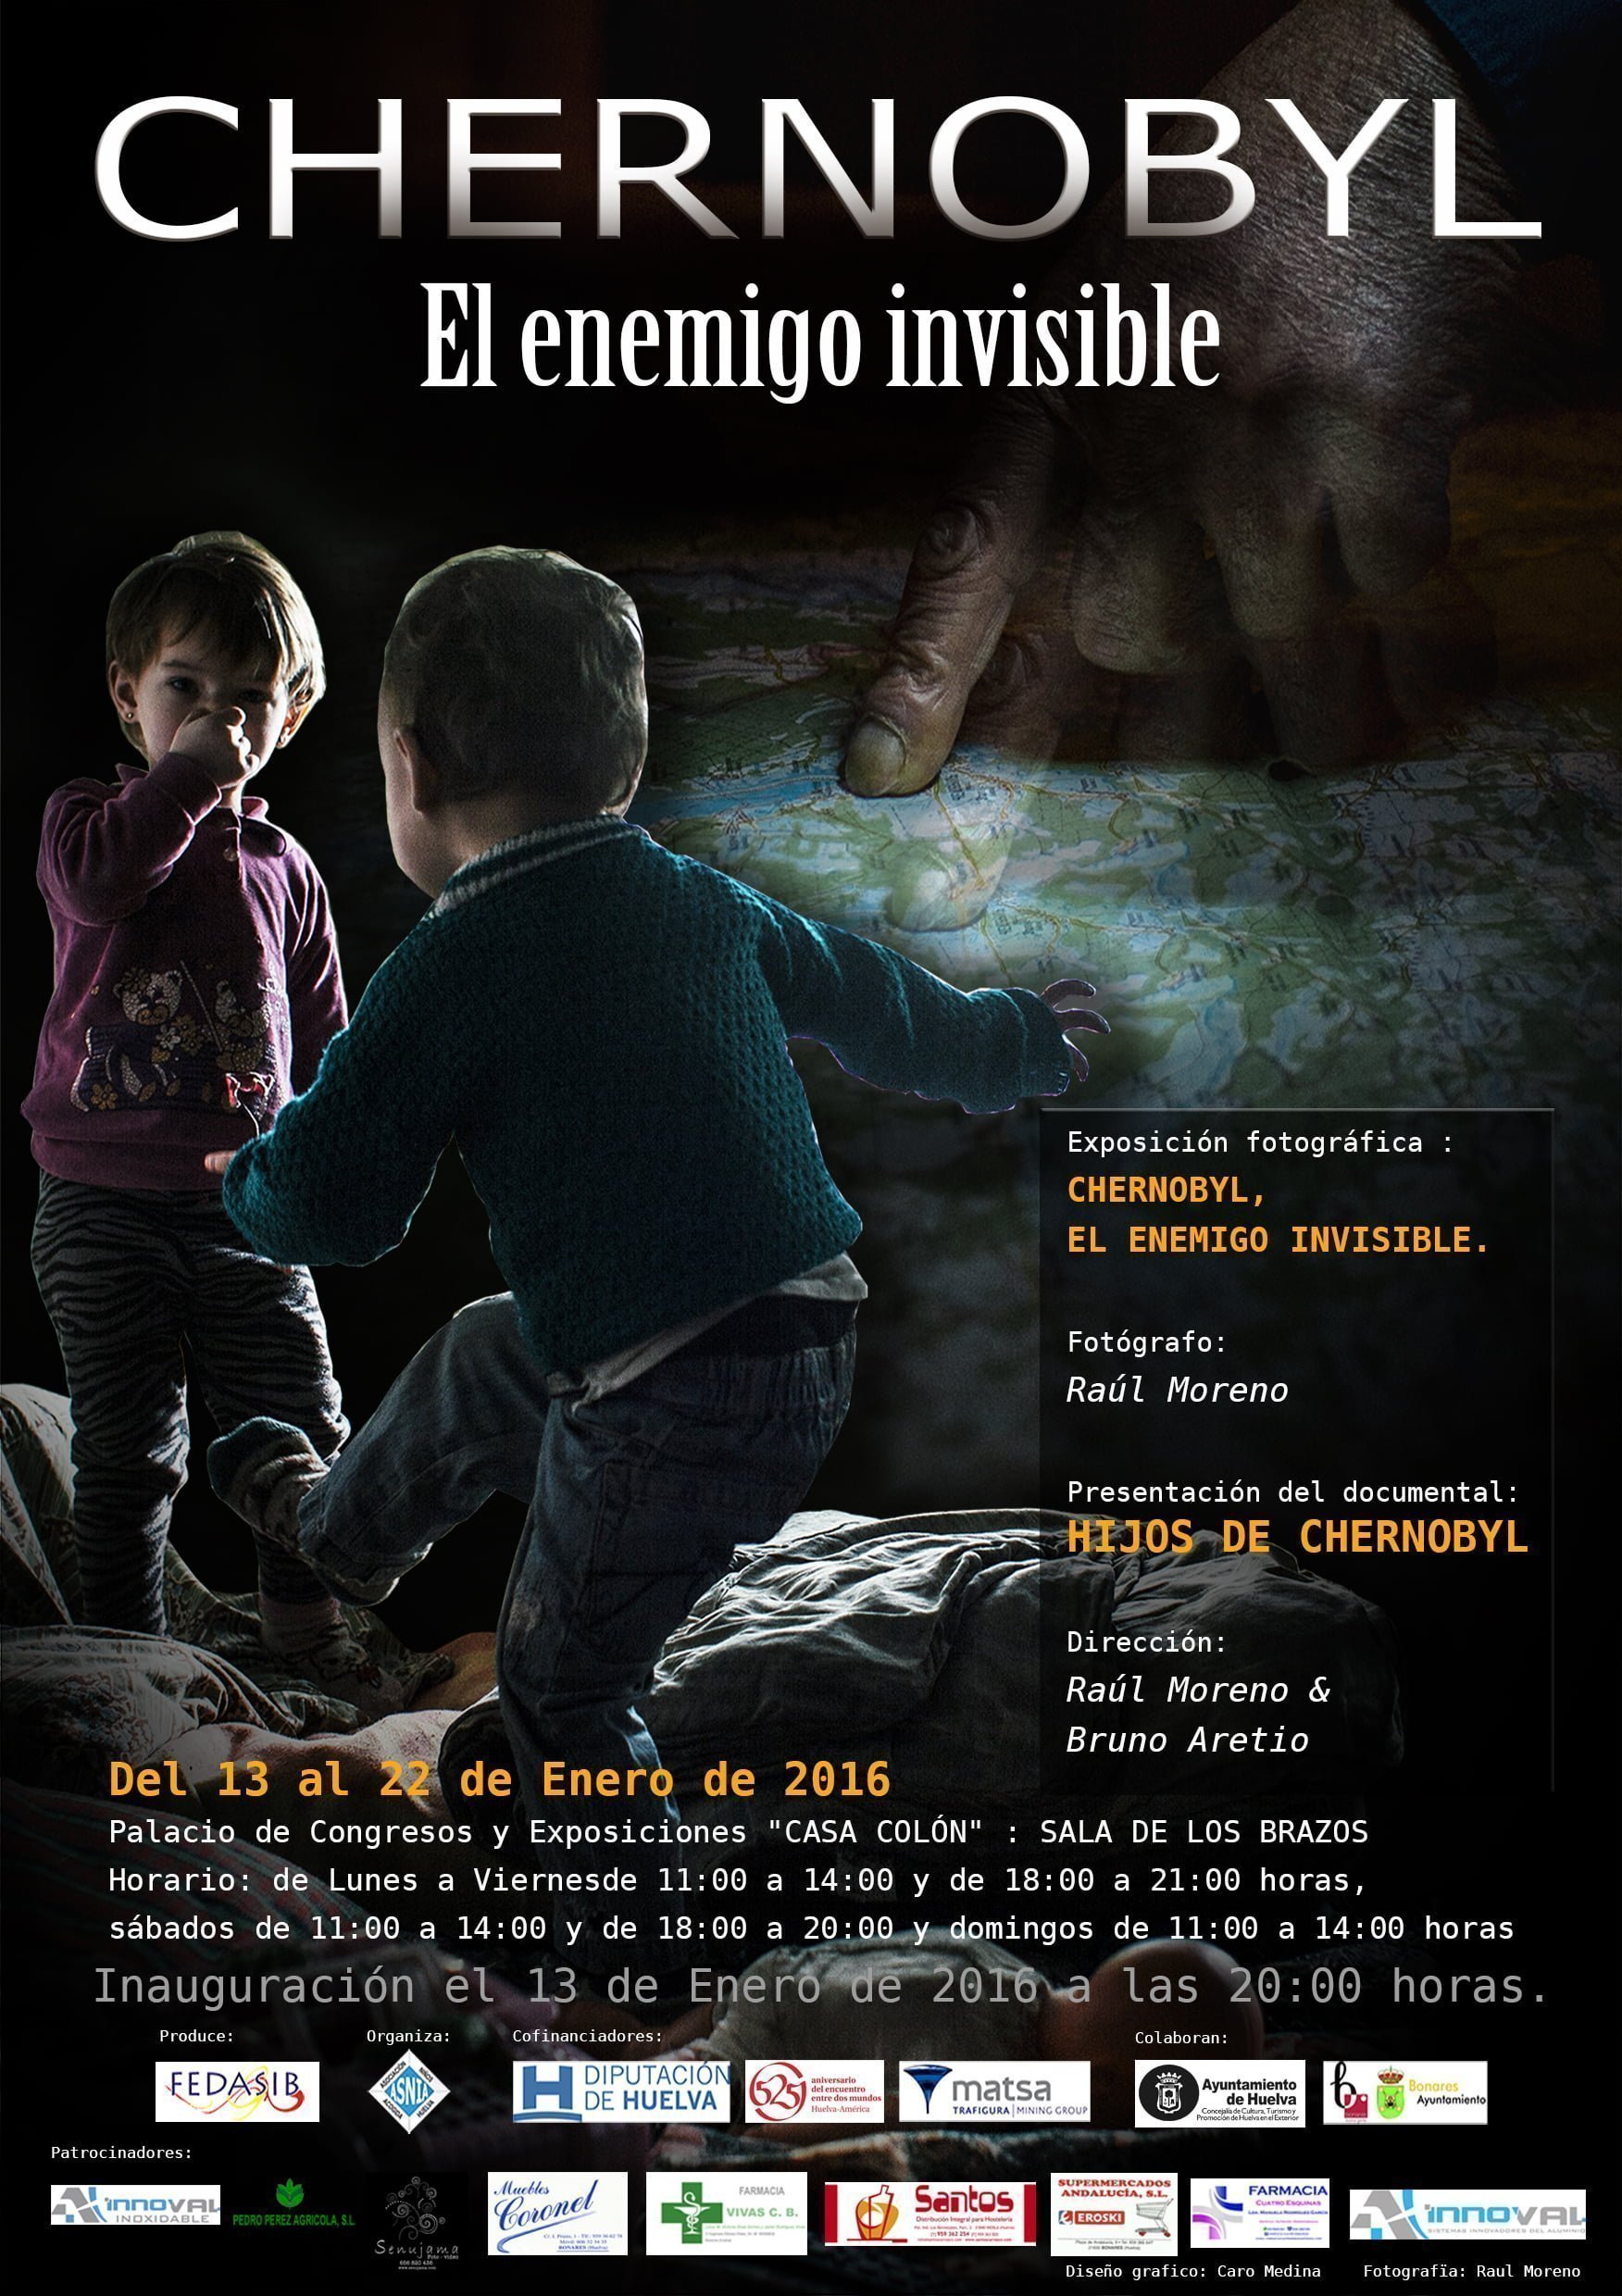 Cartel anunciador de la exposición y el documental sobre Chernobyl